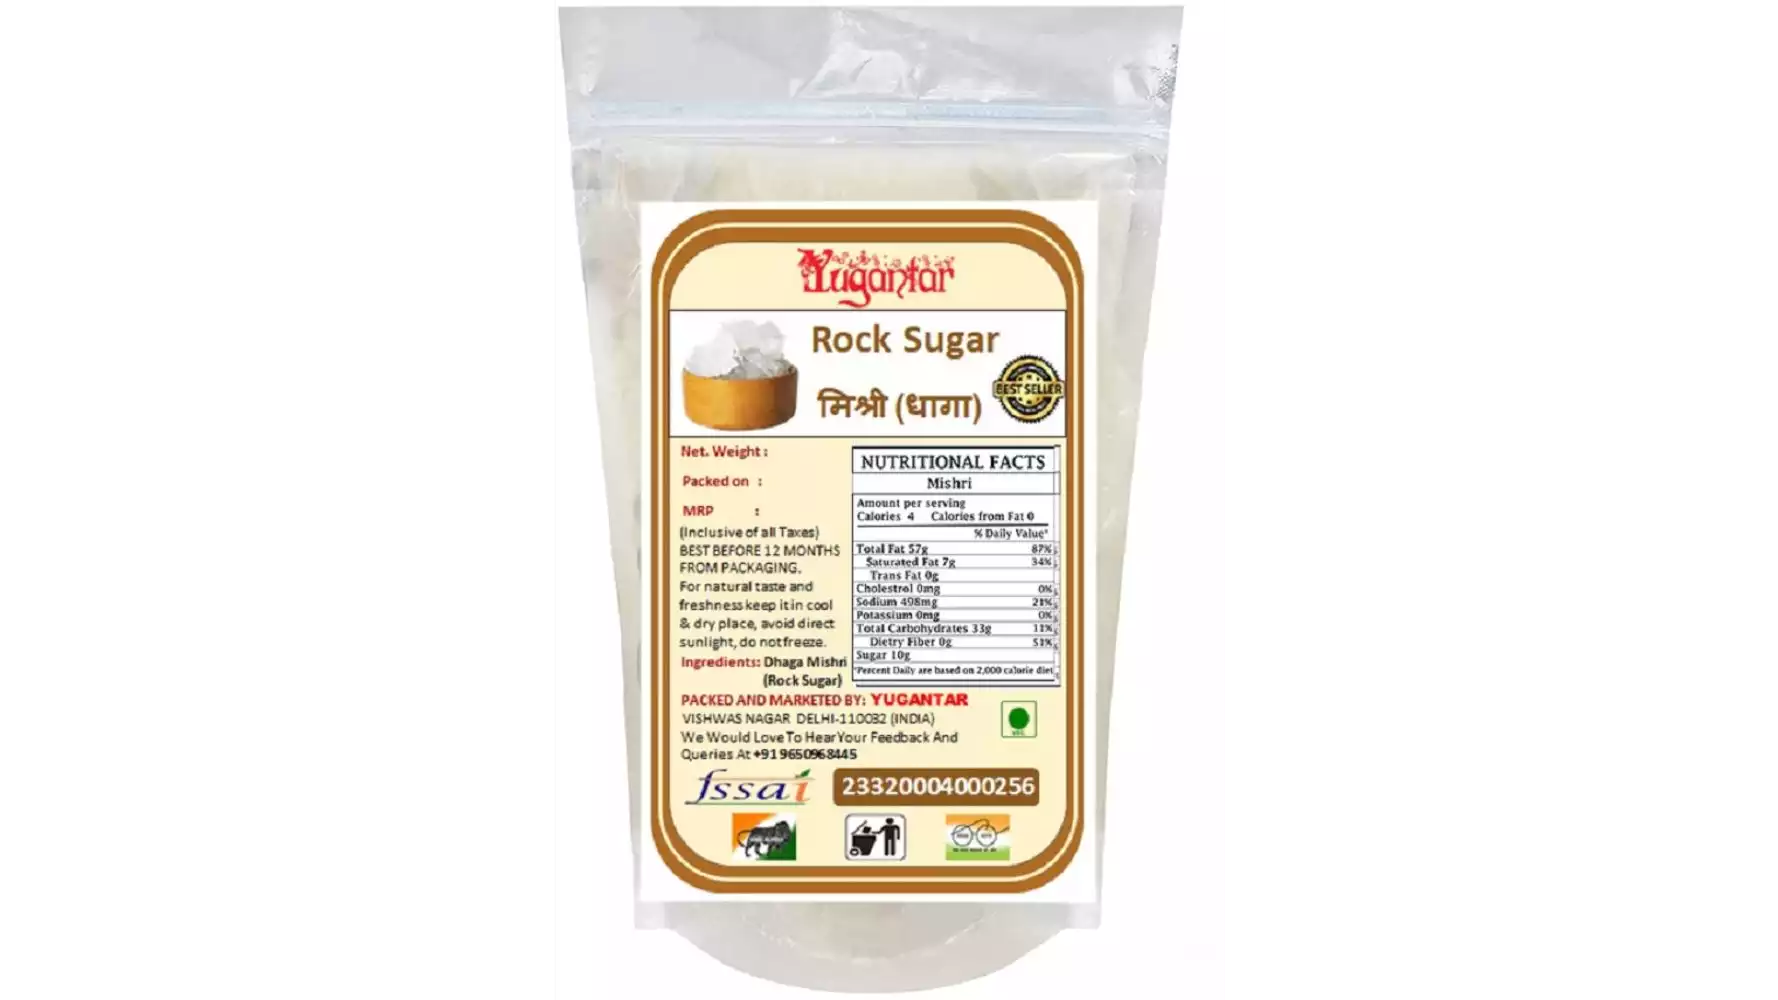 Yugantar Rock Sugar (Dhaga Mishri) (500g)